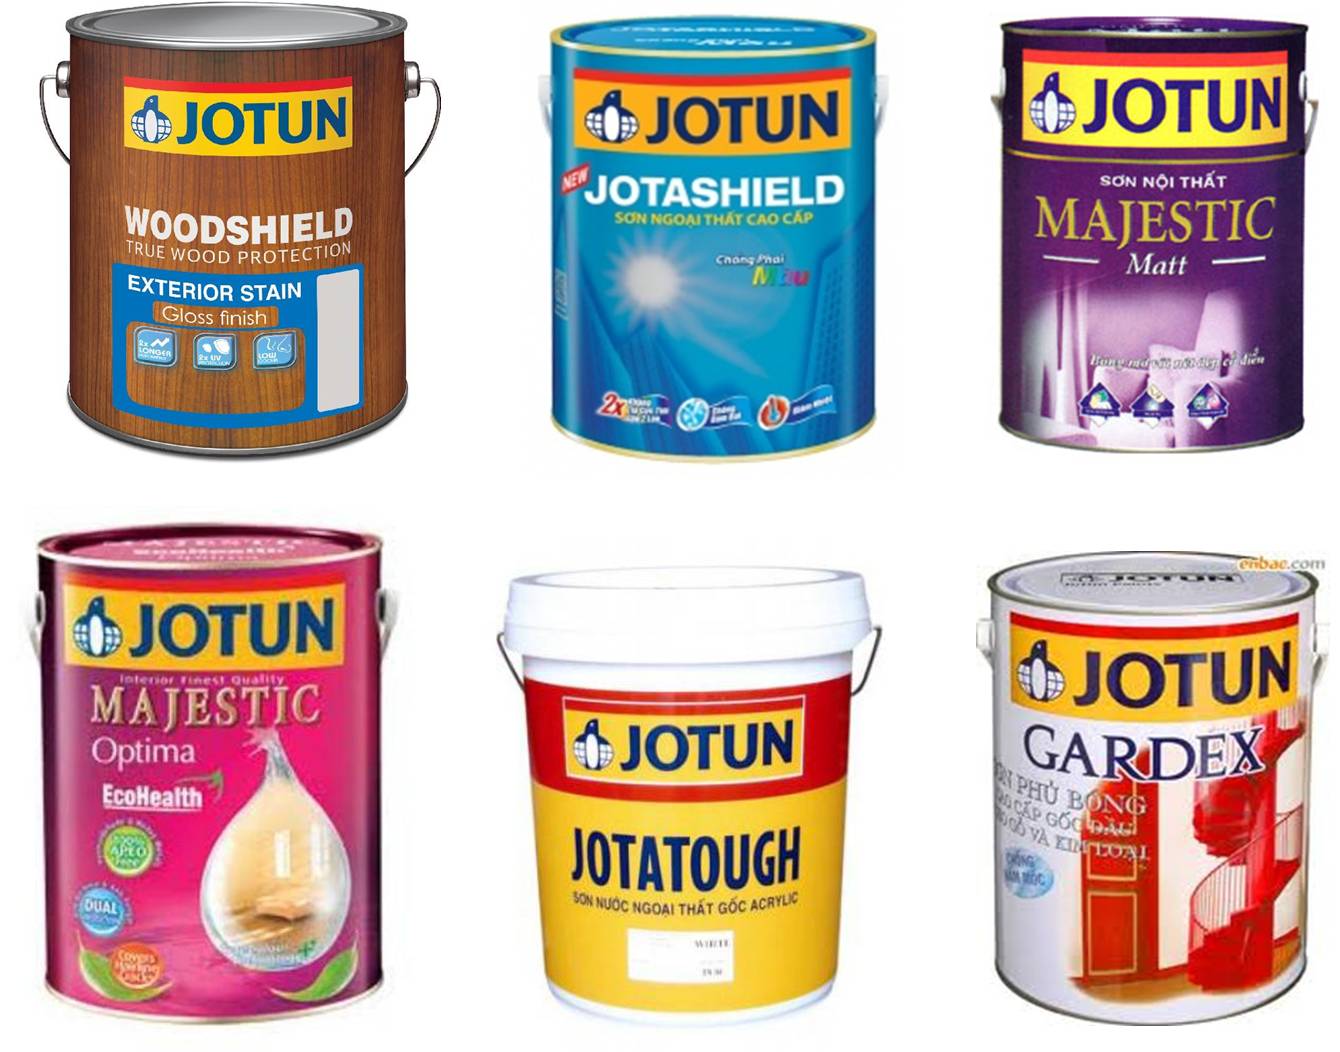 Vì sao nên chọn mua sơn Jotun?